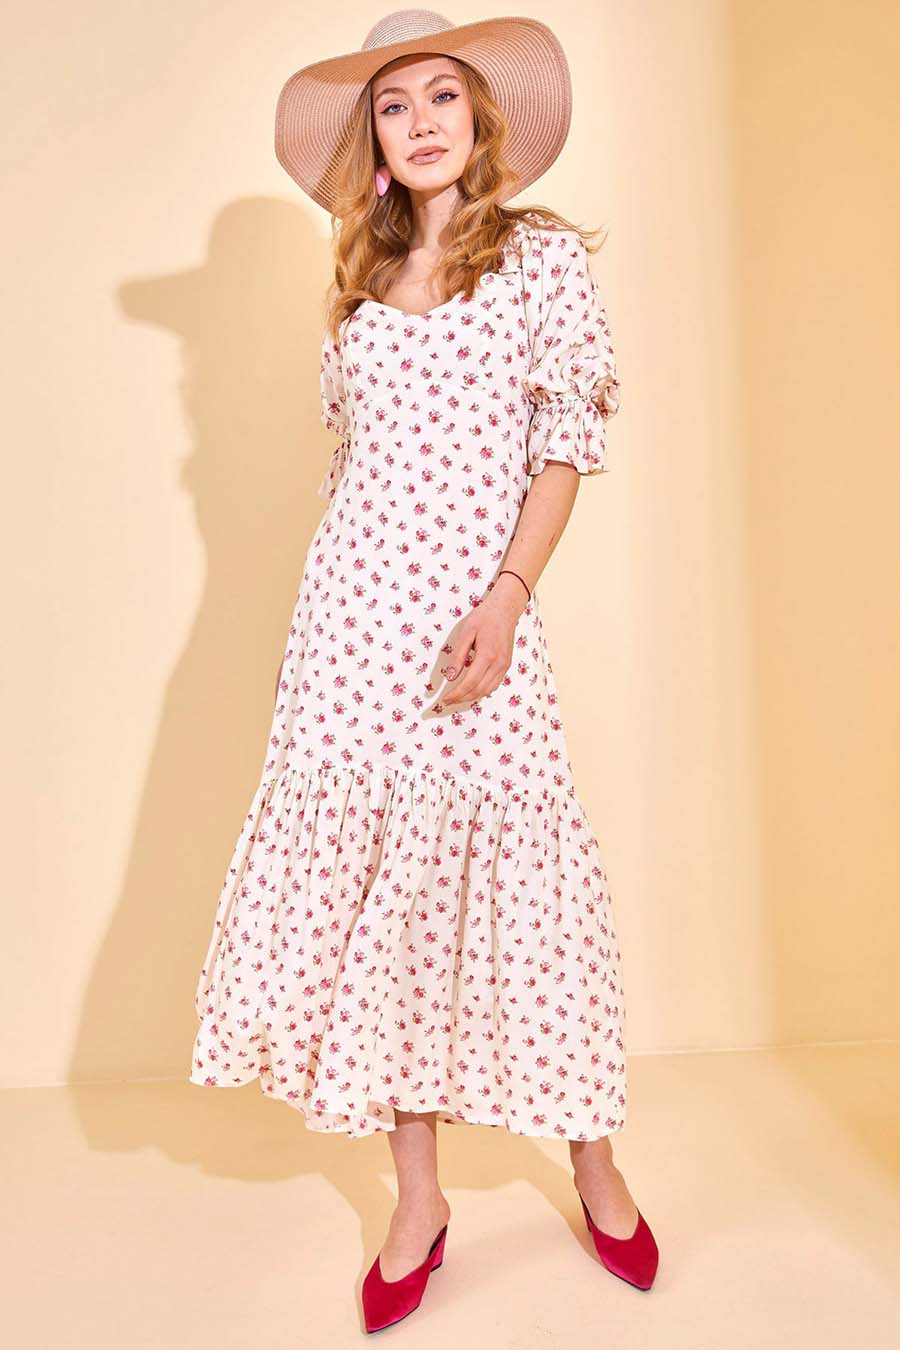 Γυναικείο φόρεμα Kaelyn, Λευκό/Ροζ 6